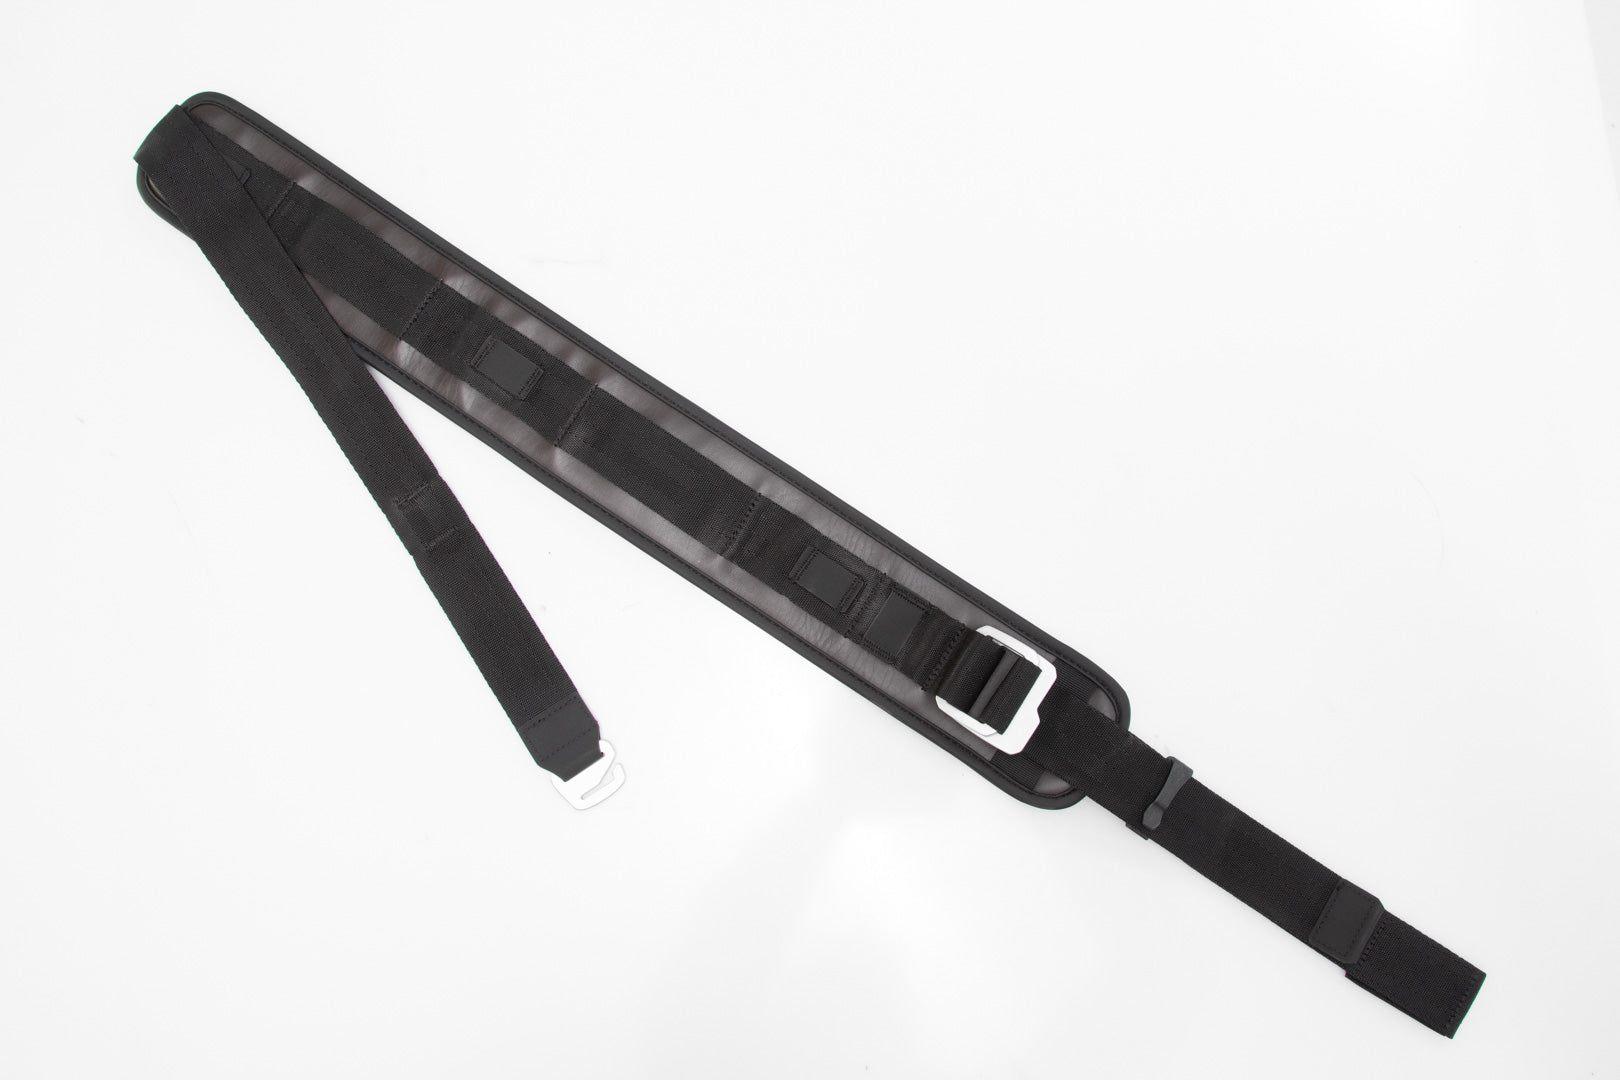 Shoulder Strap LG Messenger Bag LR3 Black 1115 mm Length Replacement